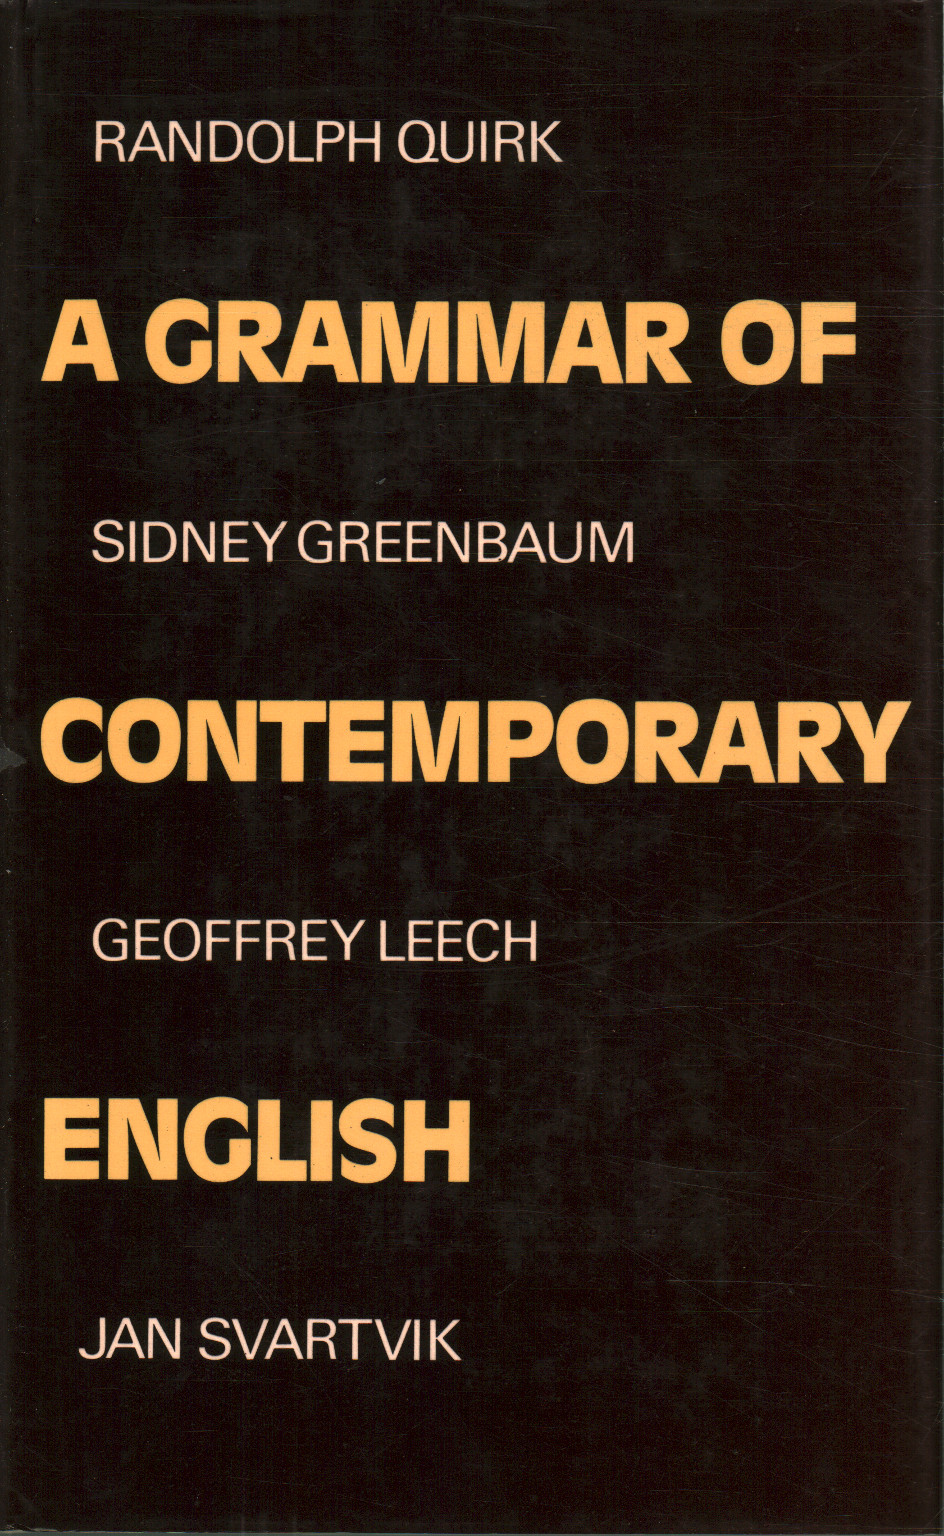 Una gramática del inglés contemporáneo